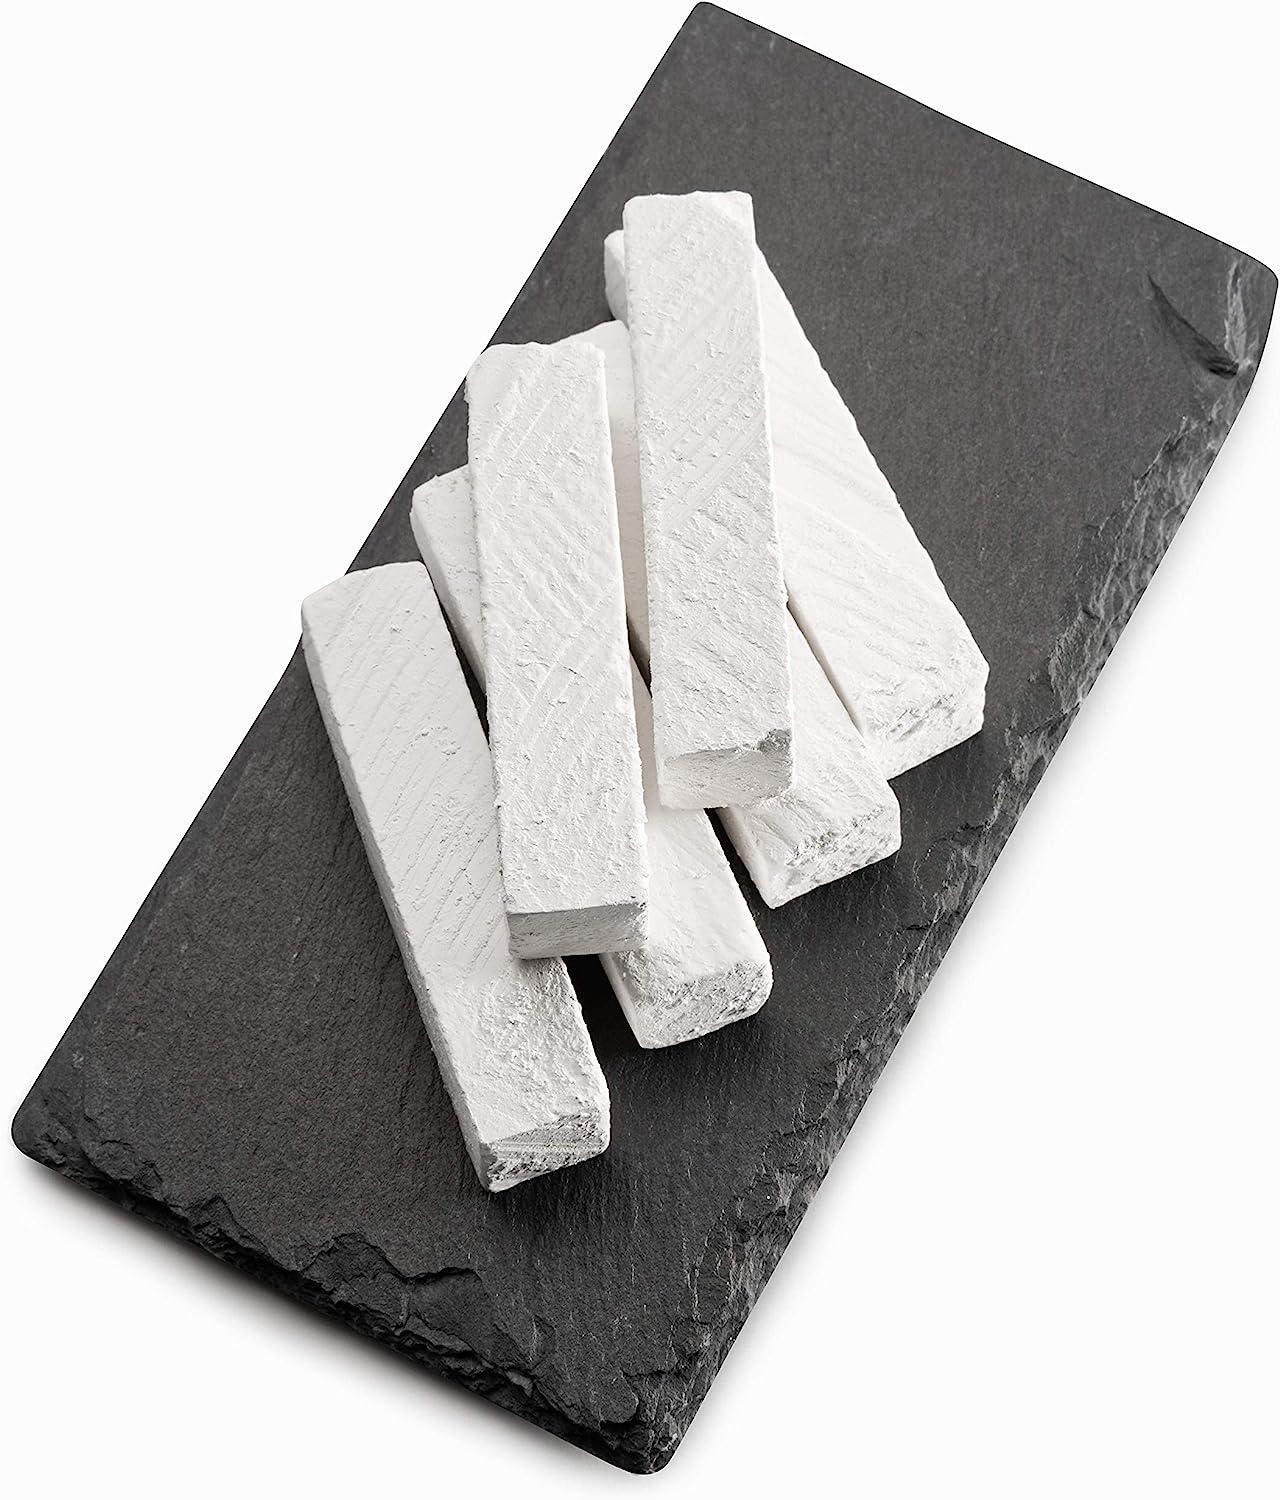 Edible chalk : BELGOROD SAWN edible Chalk chunks (lump) natural